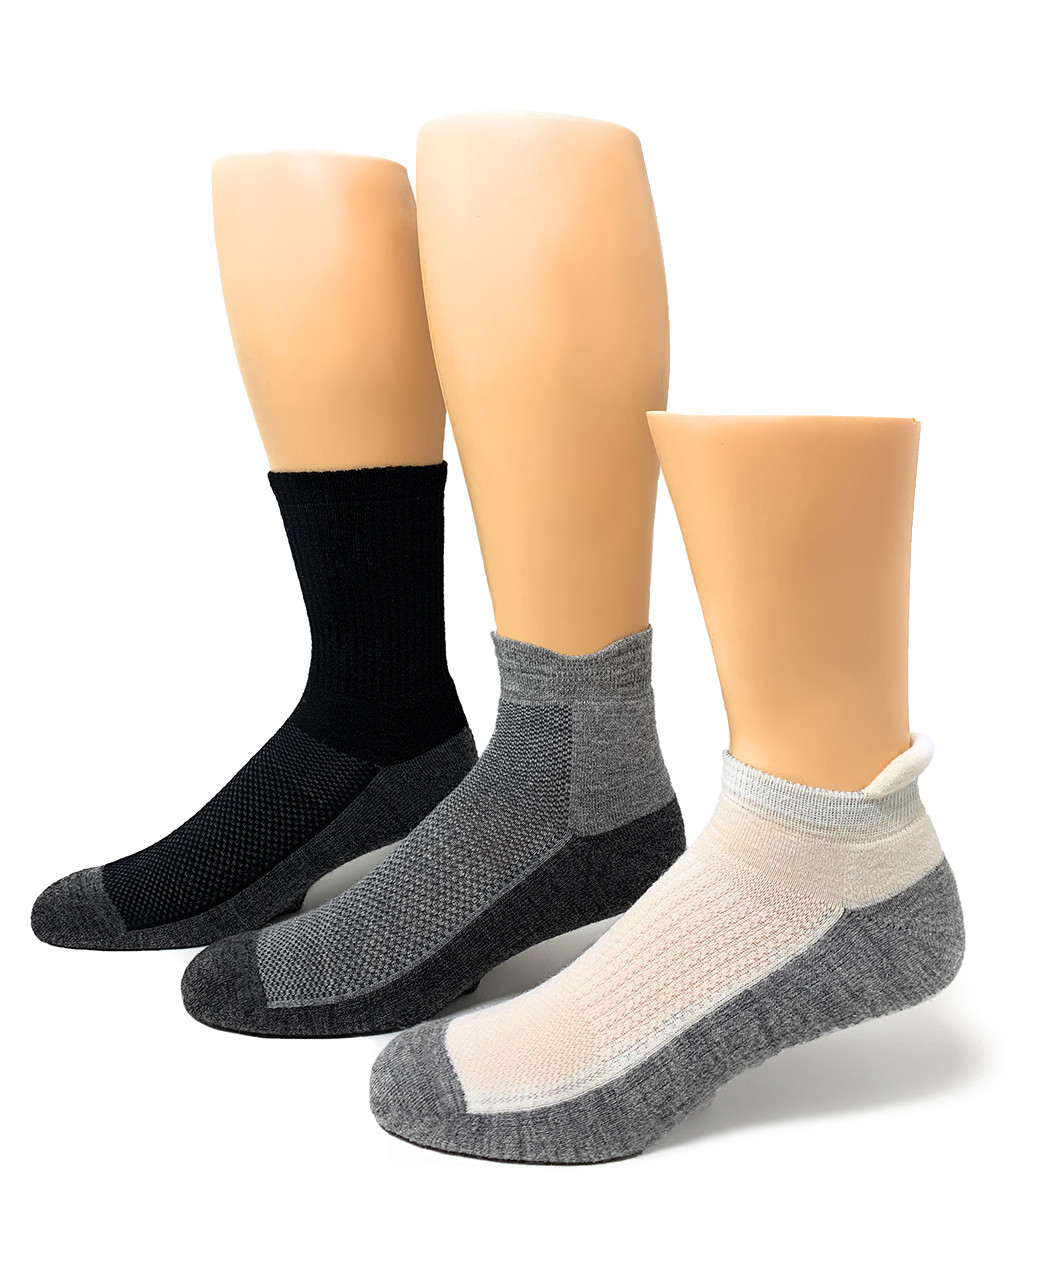 Best Alpaca Wool Ankle Socks - Warrior Alpaca Socks